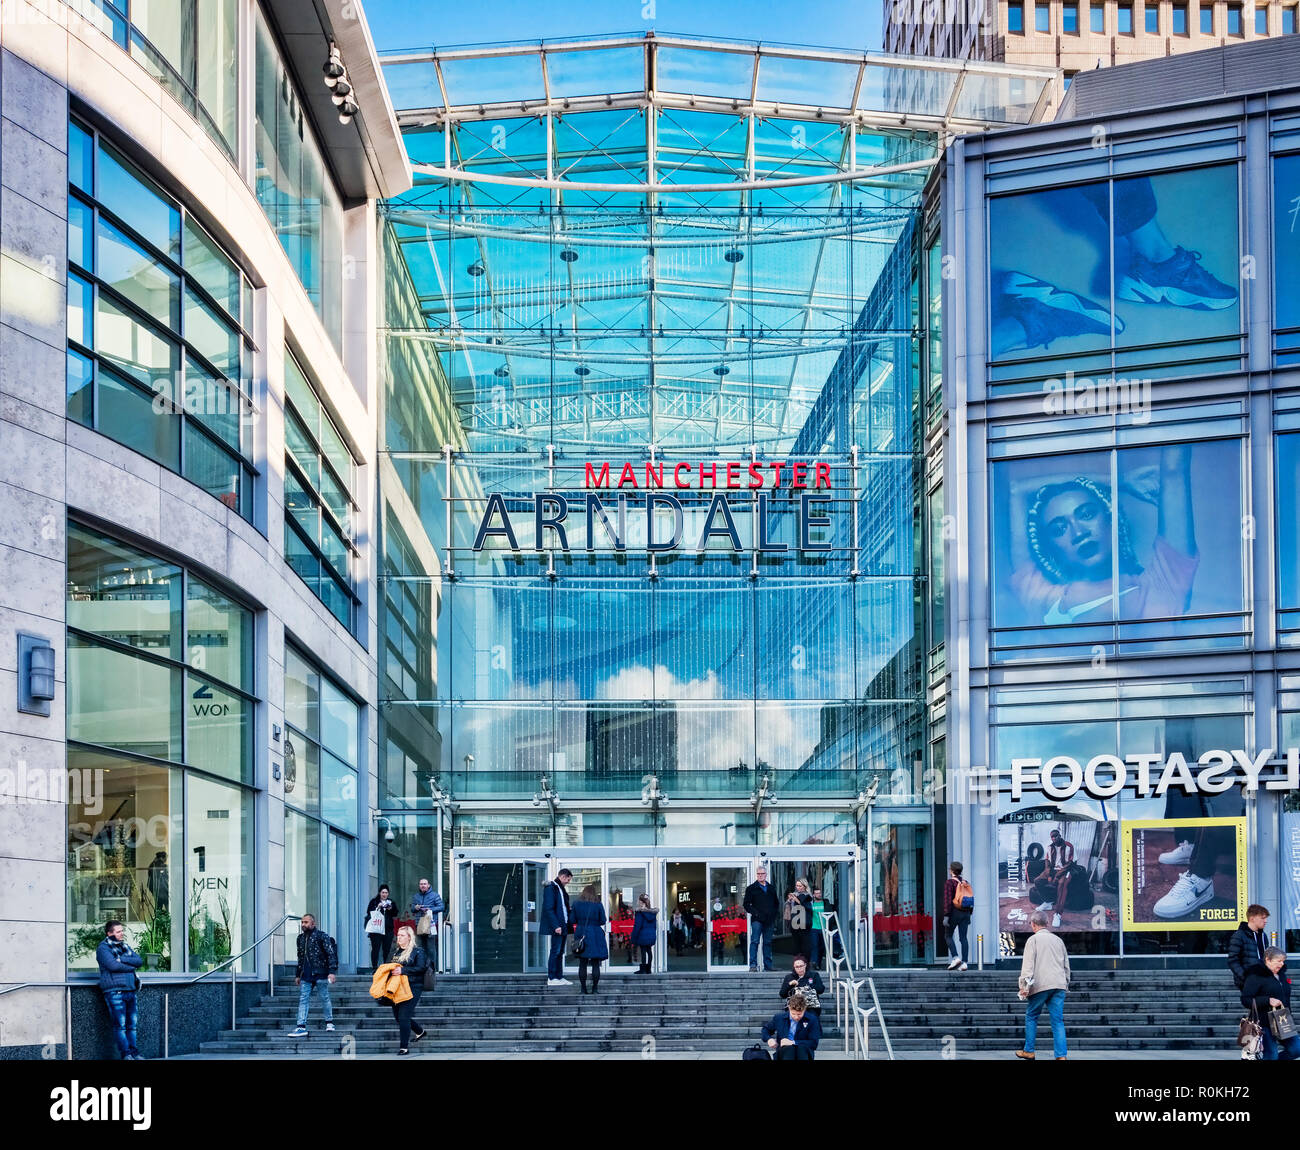 2 novembre 2018 : Manchester, UK - Corporation Street entrée de la Manchester Arndale shopping center, l'un des plus grands du Royaume-Uni. Banque D'Images